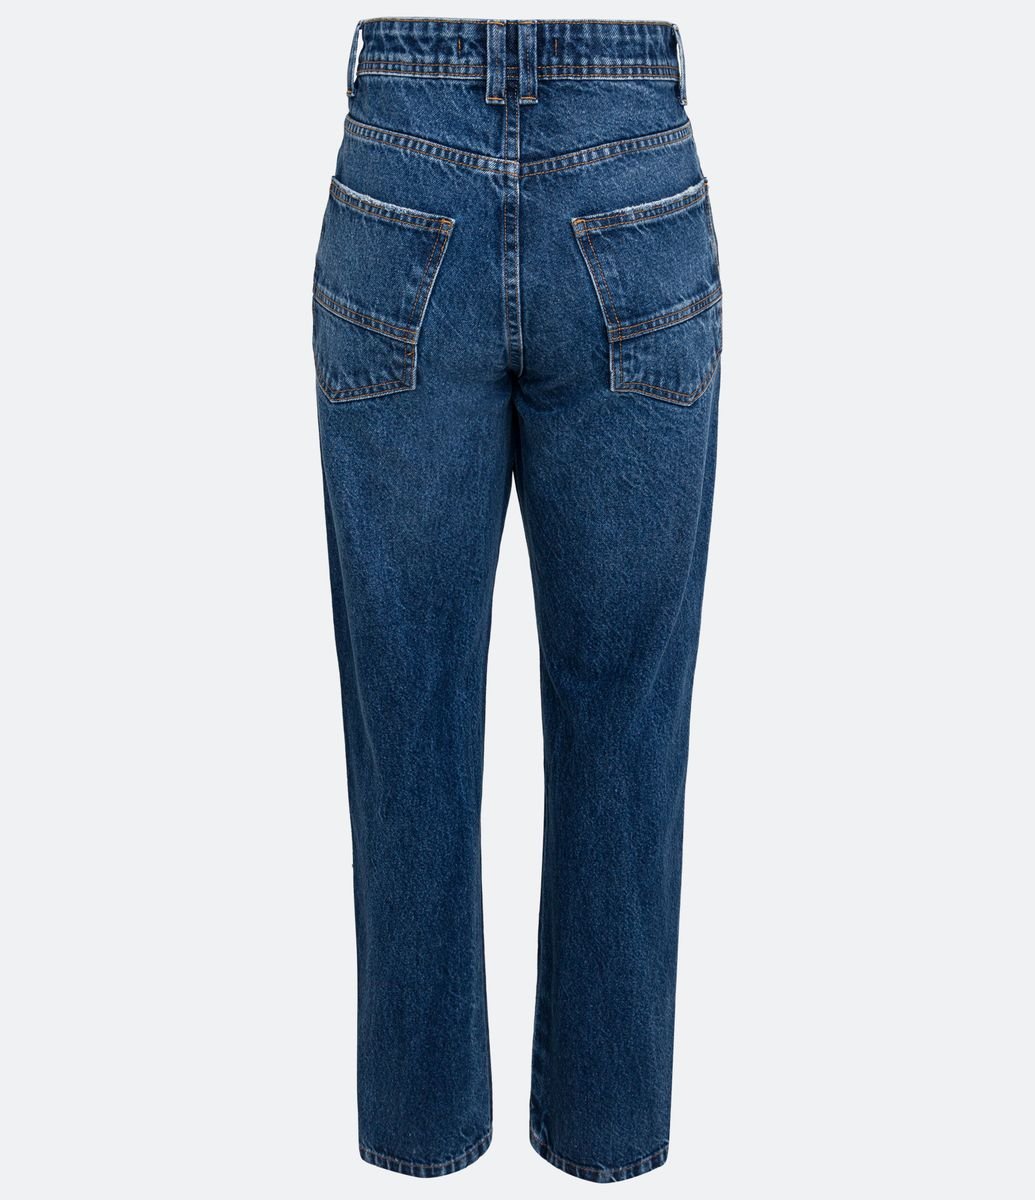 Calça Reta Cintura Alta em Jeans com Bolsos e Brilho Aplicado - Cor: Azul -  Tamanho: 42 - Shopping TudoAzul